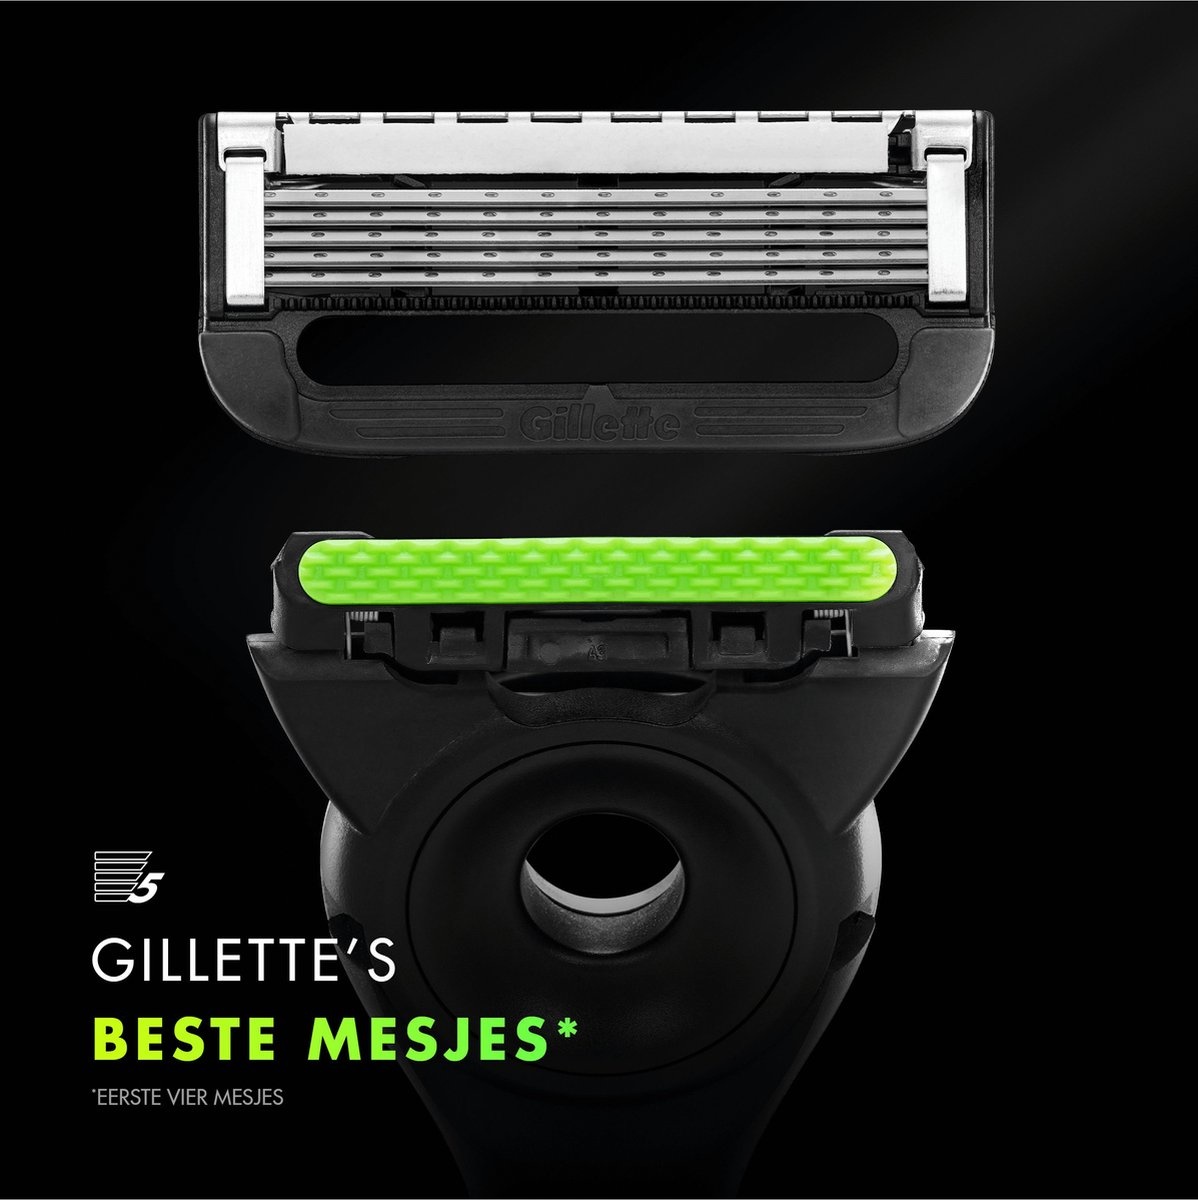 GilletteLabs Avec Barre Exfoliante de Gillette - 1 Manche - 5 Lames de Rasoir - Support Magnétique - Étui de Voyage - Emballage endommagé